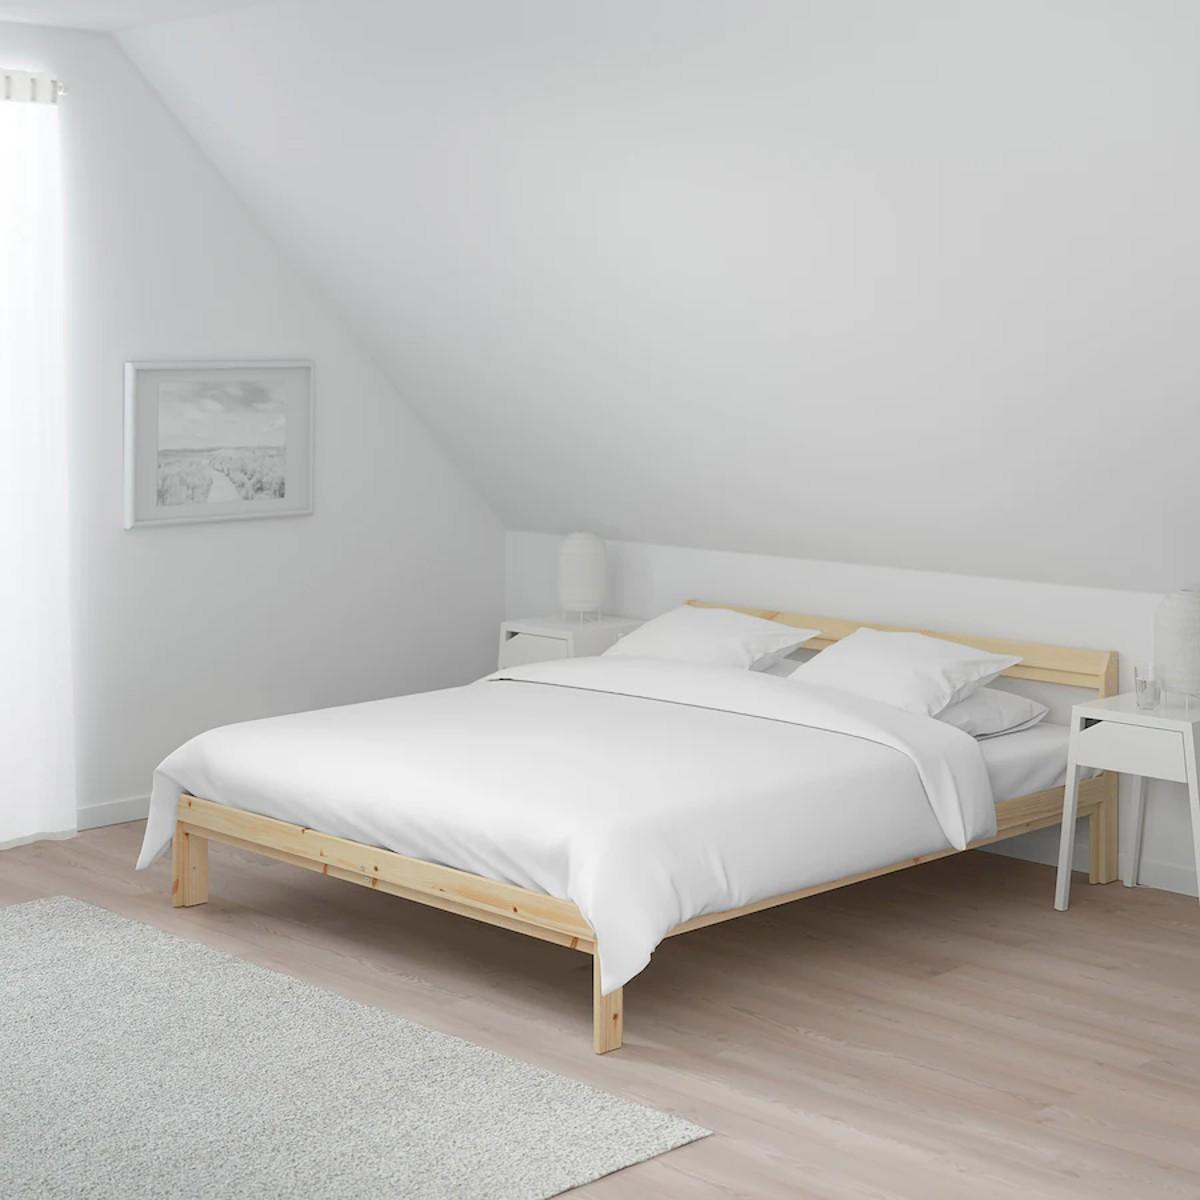 Cama Neiden Ikea | La estructura de la cama es sencilla pero de robusta madera de pino